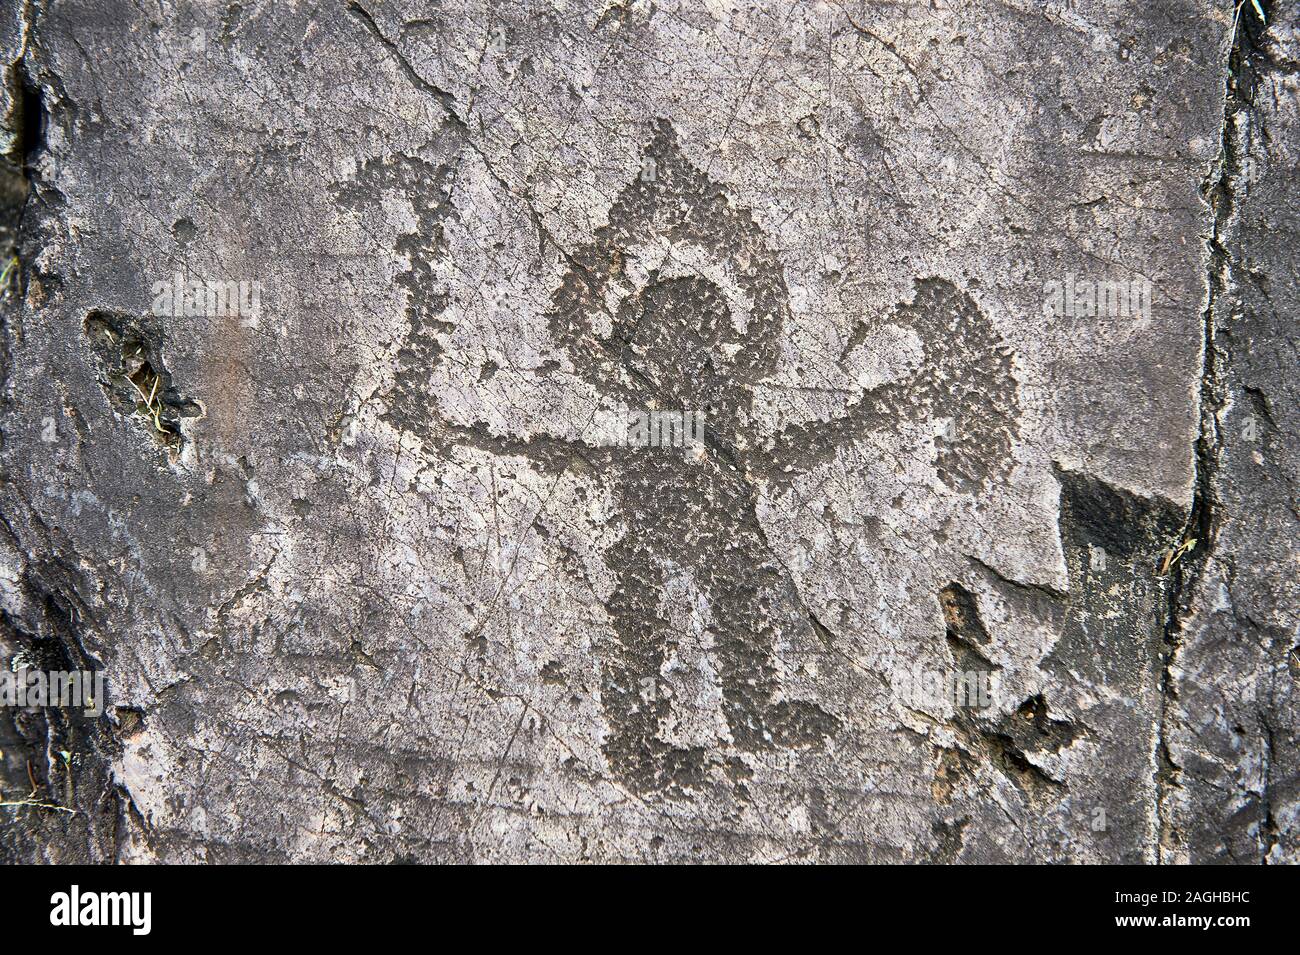 Los petroglifos prehistóricos, tallado en la roca, de guerrero con un casco tipo halo pequeño escudo y hacha tallada por el pueblo Camunni en la edad de hierro entre 100 Foto de stock